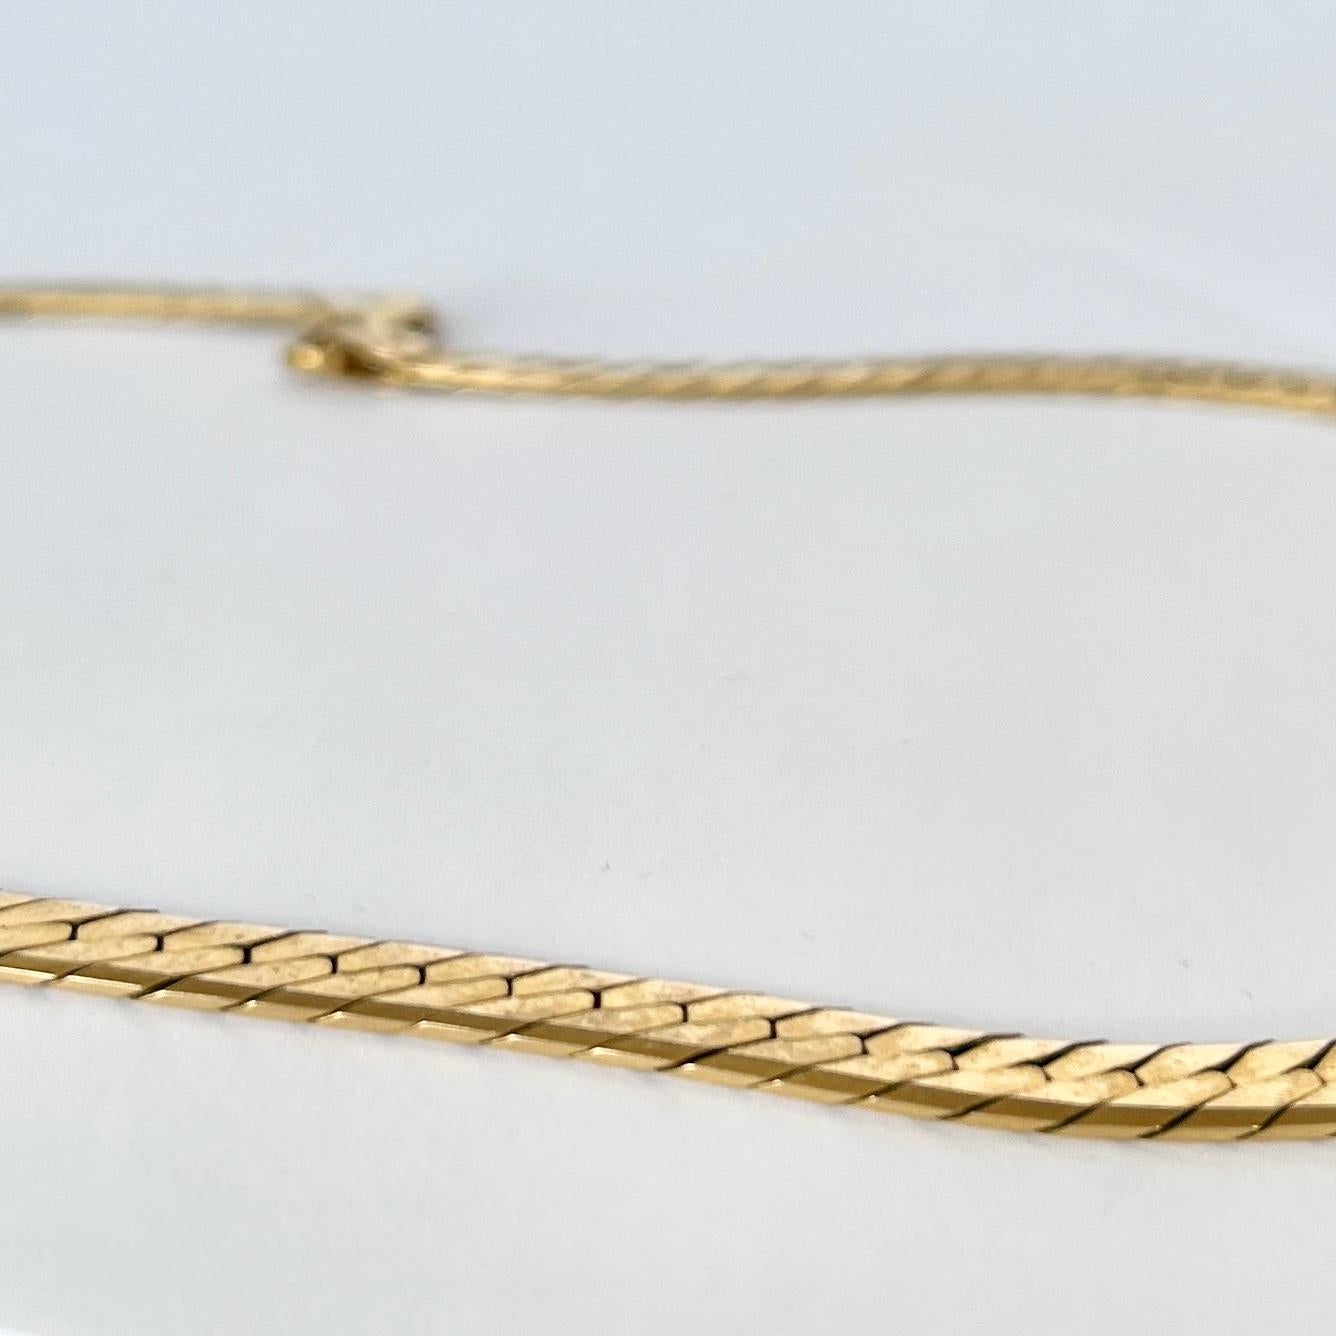 Dieses schöne Vintage-Halsband aus 9-karätigem Gold ist flach und sitzt schön. Sie wird mit einer einfachen Schließe verschlossen.

Länge: 40,5 cm
Breite: 6 mm 

Gewicht: 19,9g